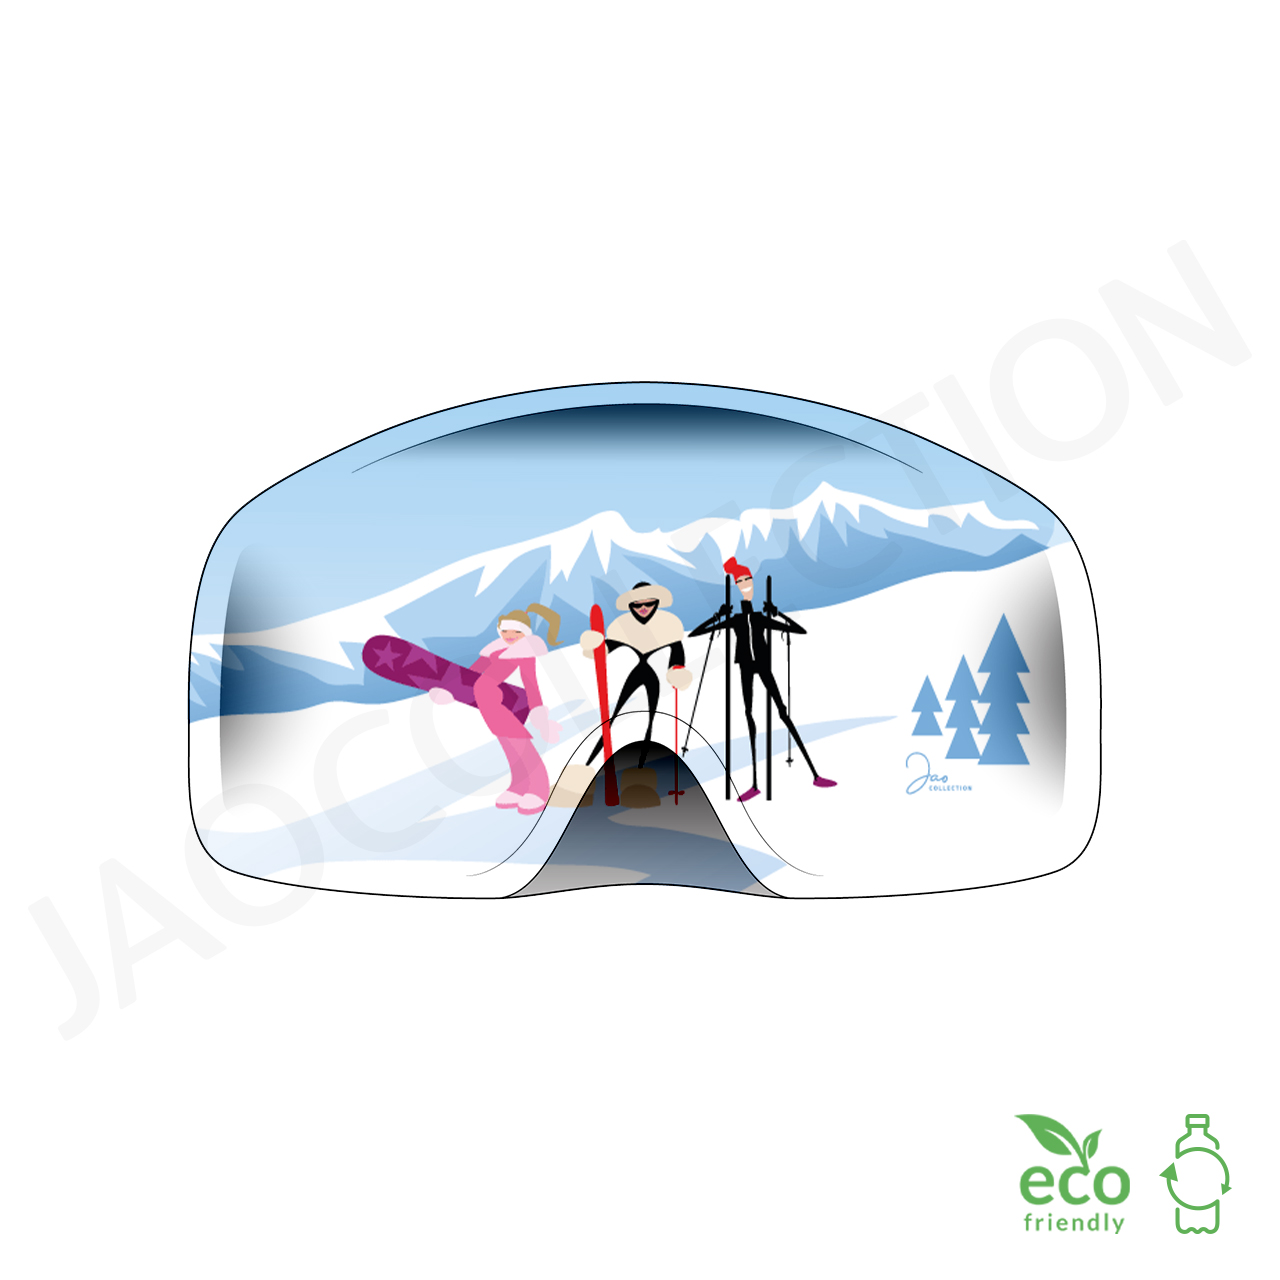 Cache-cou en polaire - Masque de ski - Masque de scooter - Masque d'hiver -  Bonnet